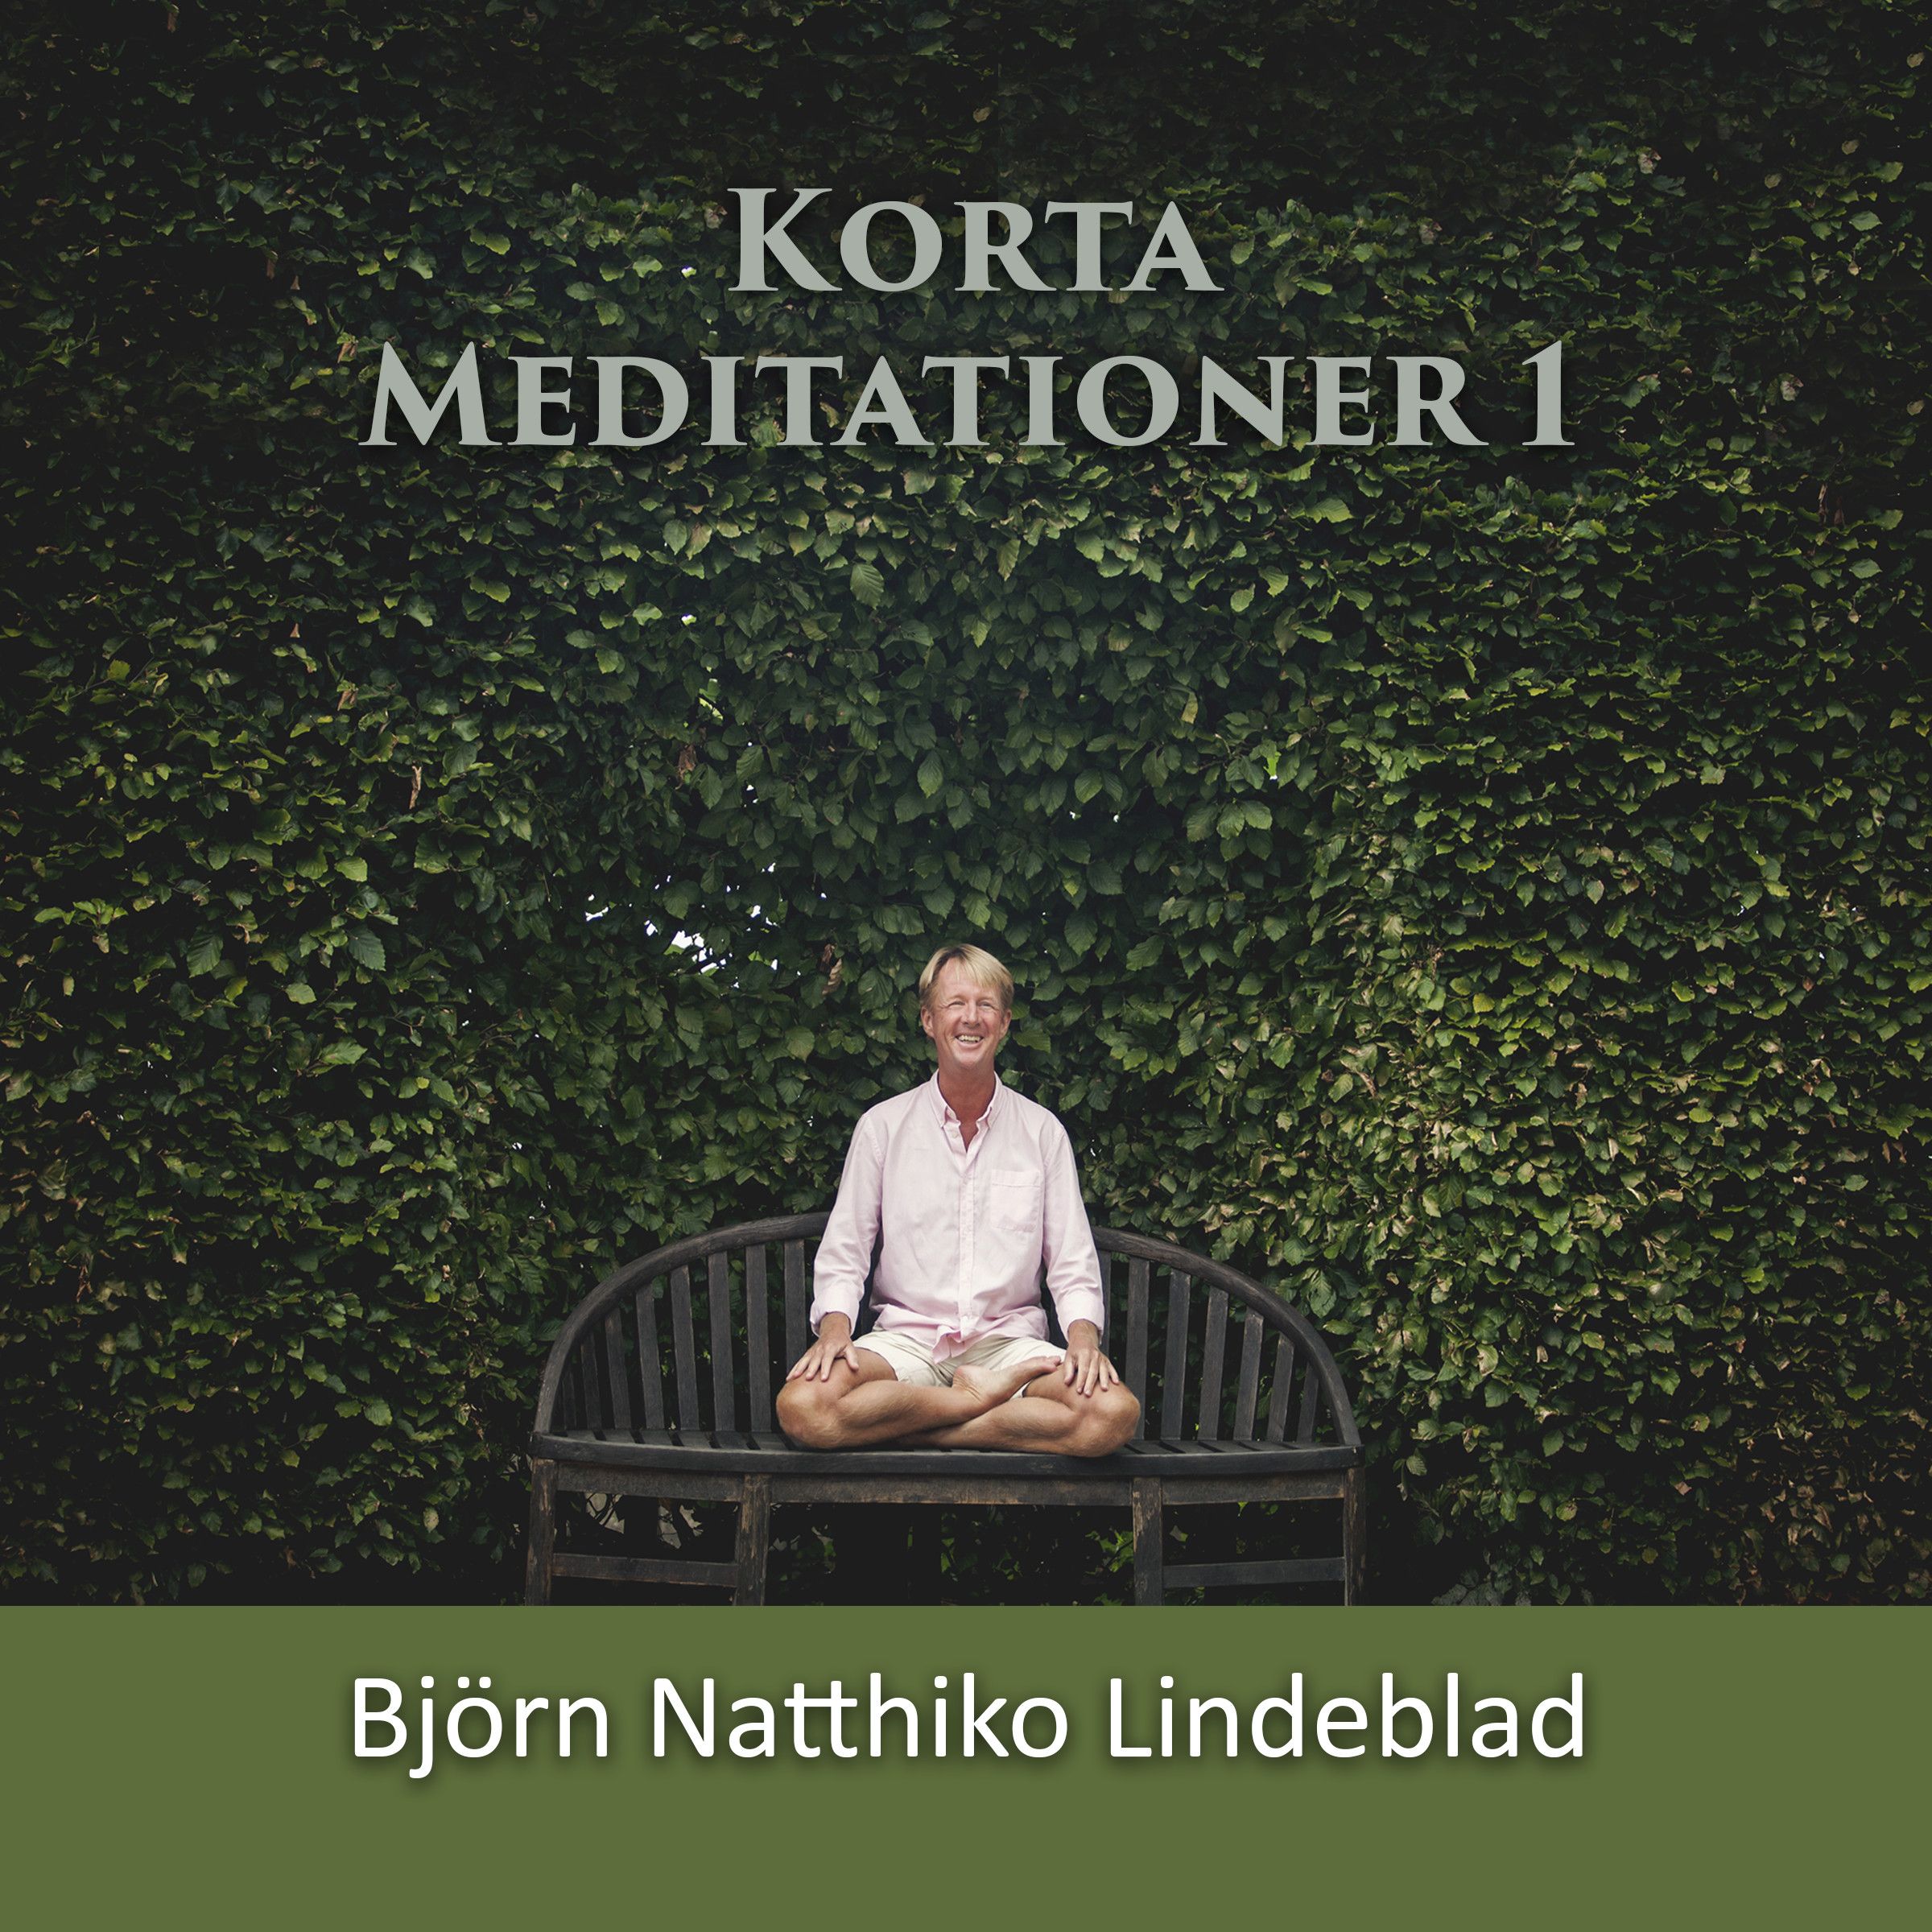 Korta Meditationer 1, ljudbok av Björn Natthiko Lindeblad